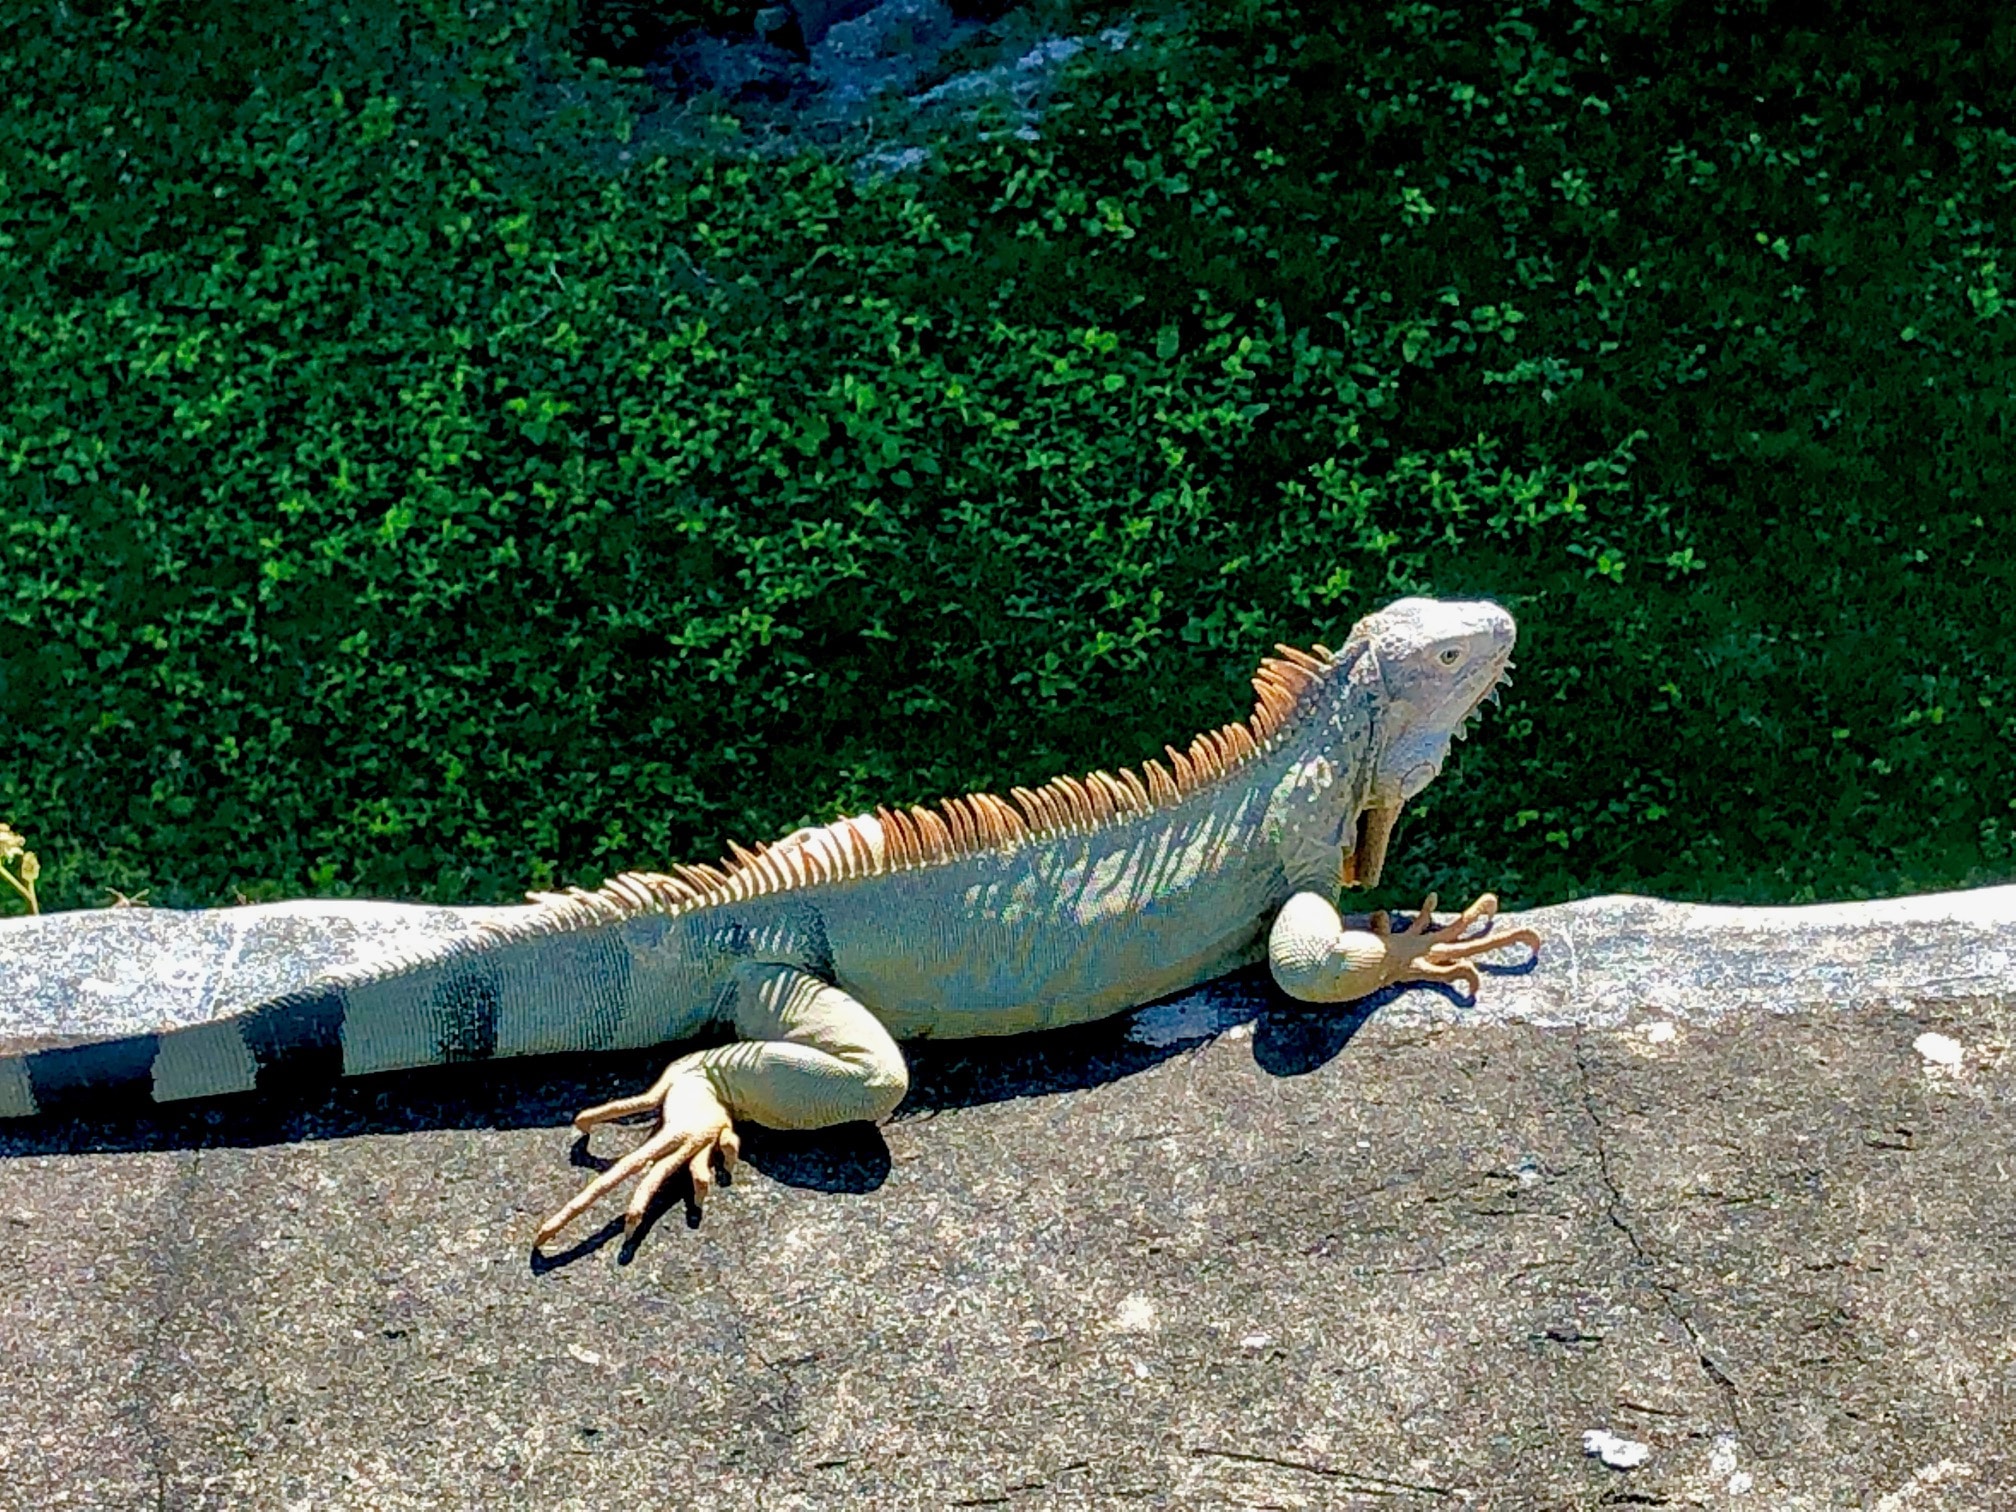 Iguanas in Old San Juan